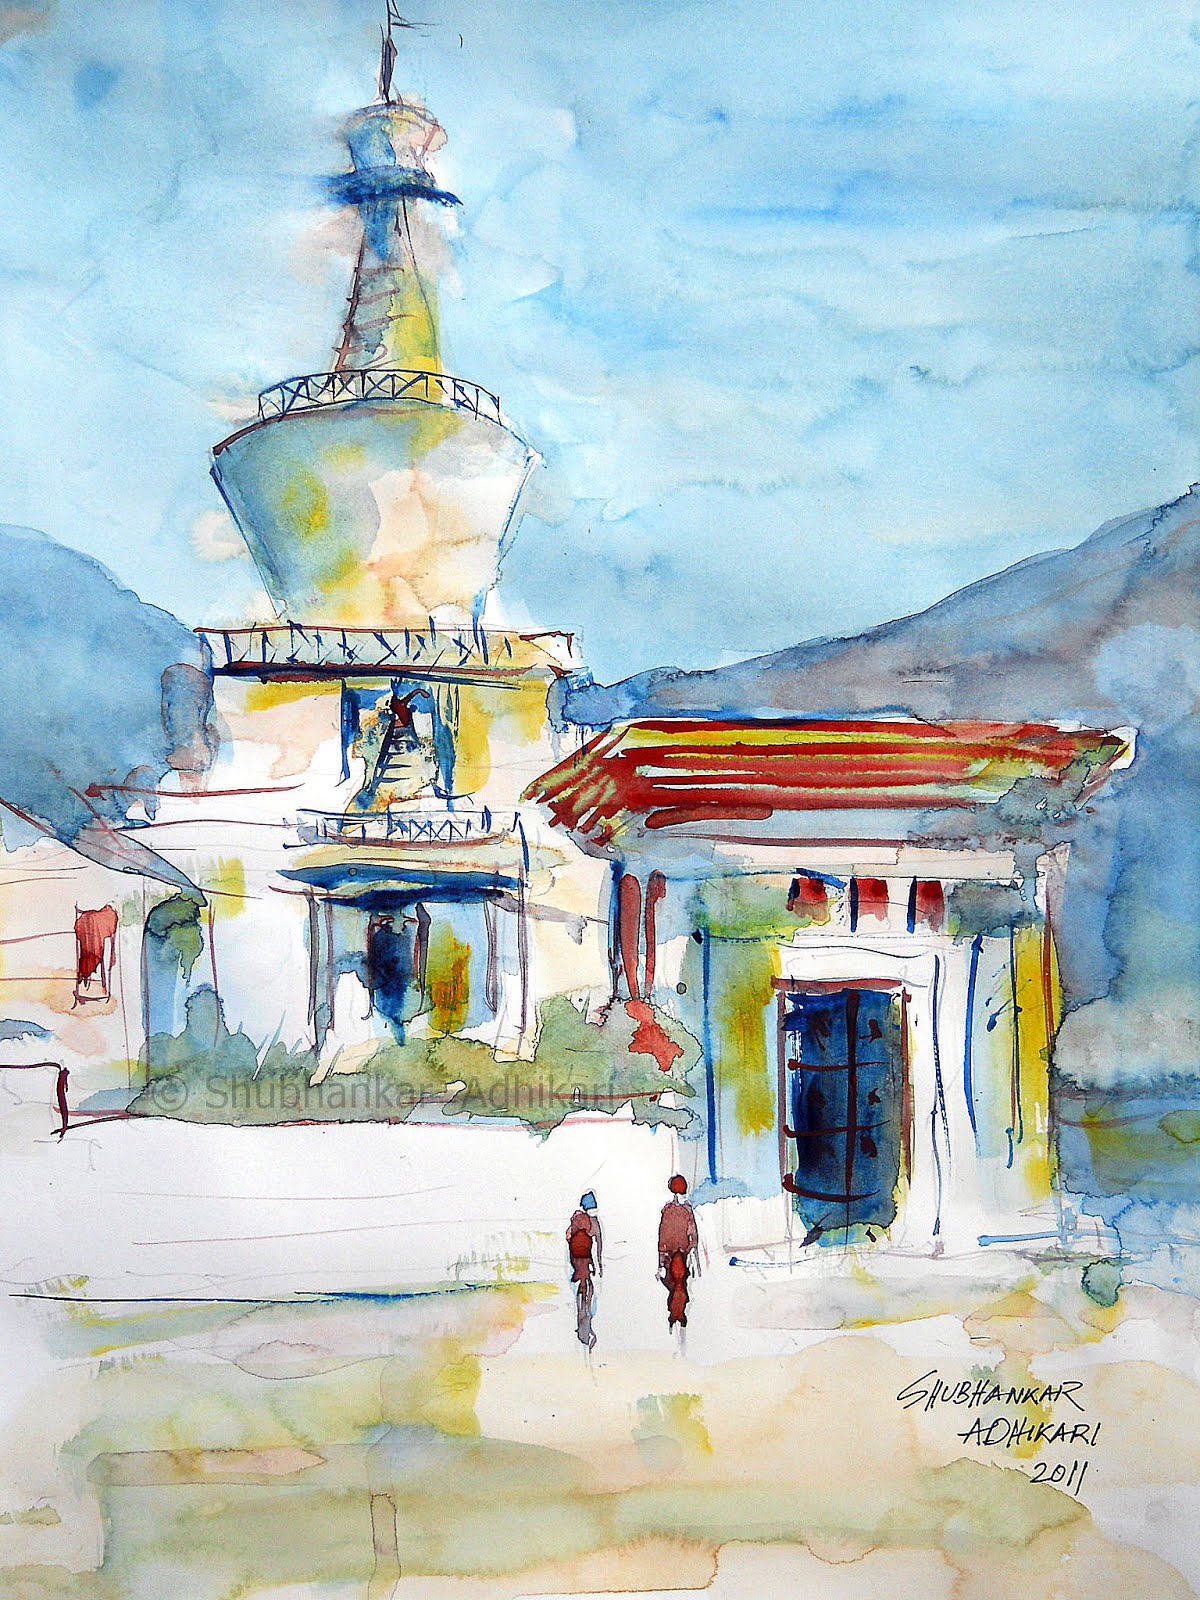 Shubhankar Adhikari's painting